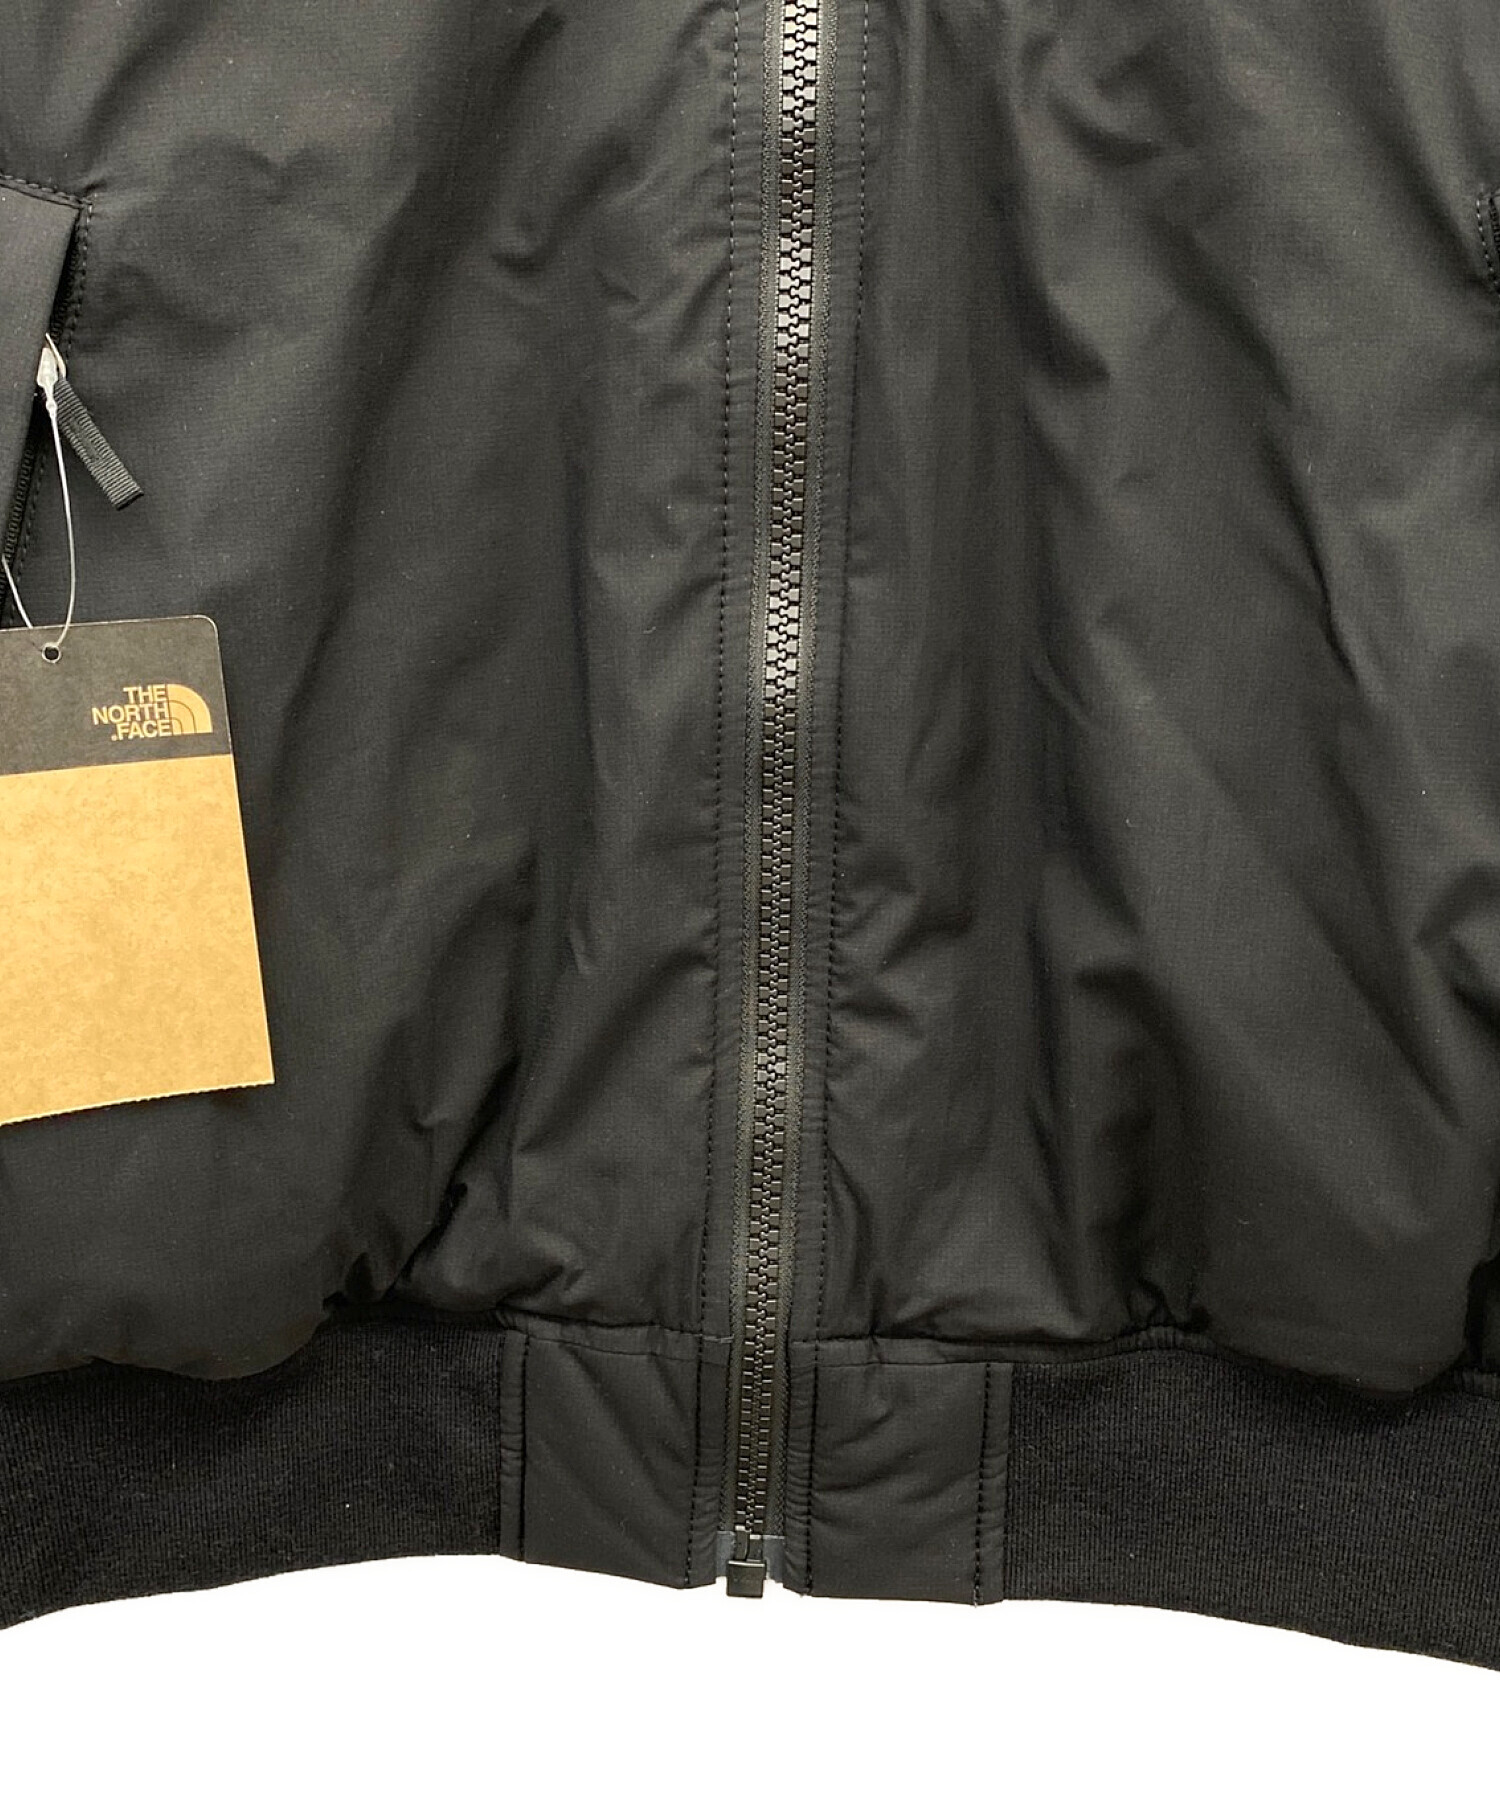 THE NORTH FACE (ザ ノース フェイス) GTXインサレーションボンバージャケット ブラック サイズ:XL 未使用品